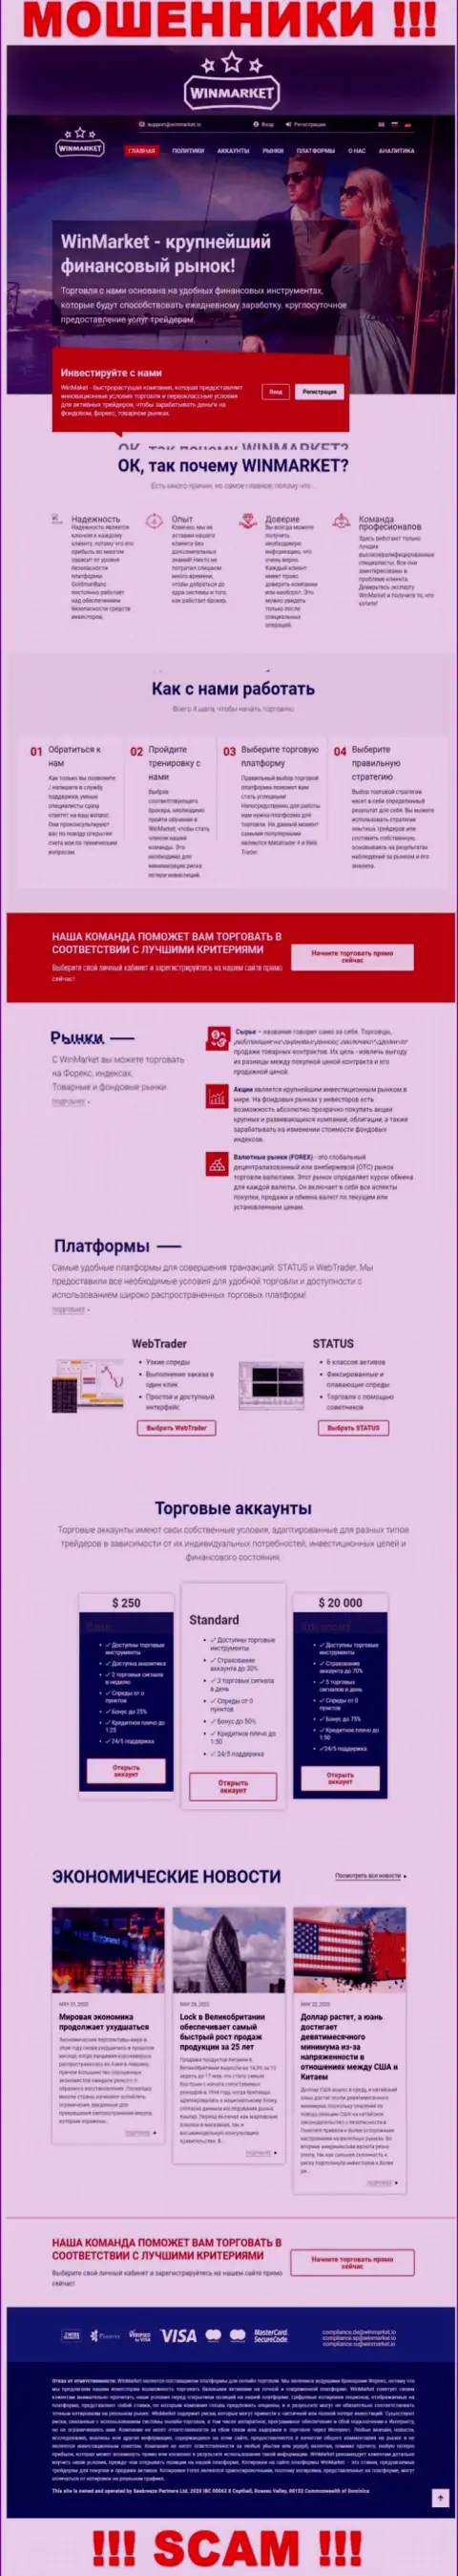 Фейковая информация от организации WinMarket на официальном интернет-сервисе мошенников